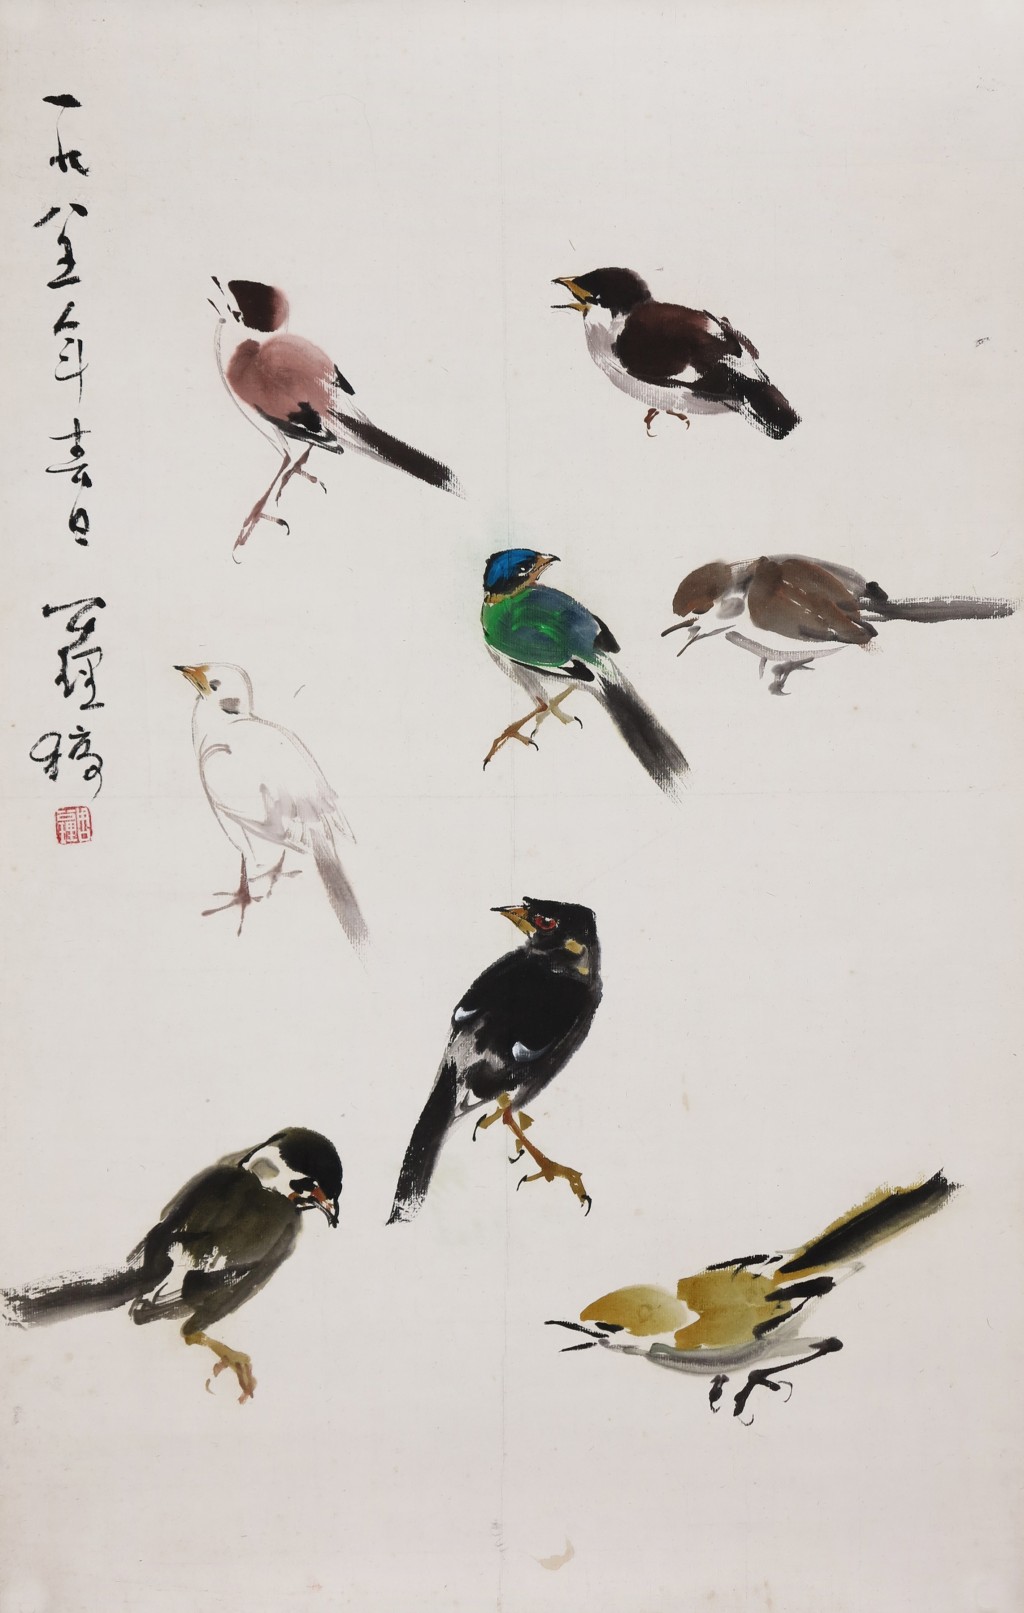 雀鳥畫稿之一。